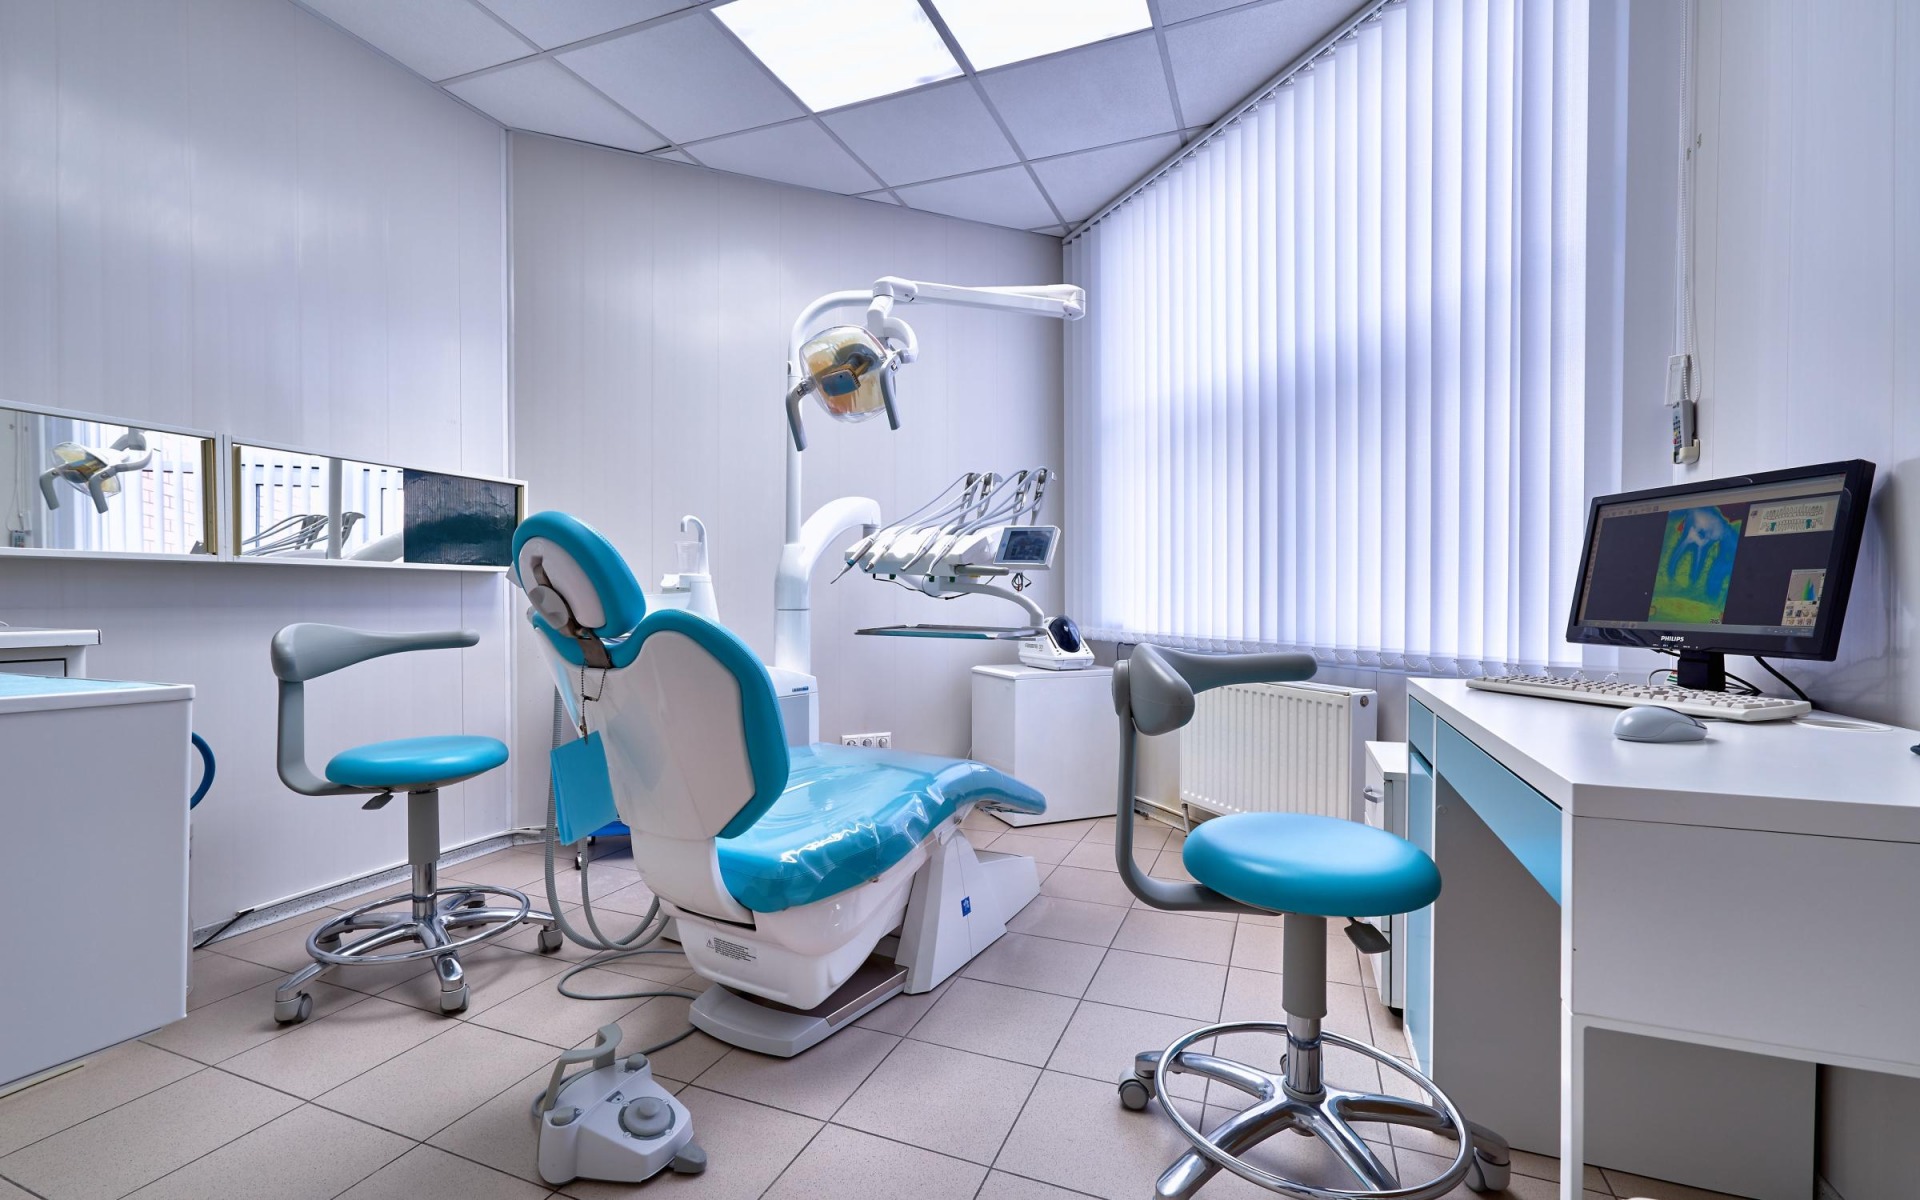 «Все в порядке»: Росздравнадзор проверил стоматологию, врачи которой жаловались на требования «выполнить план»